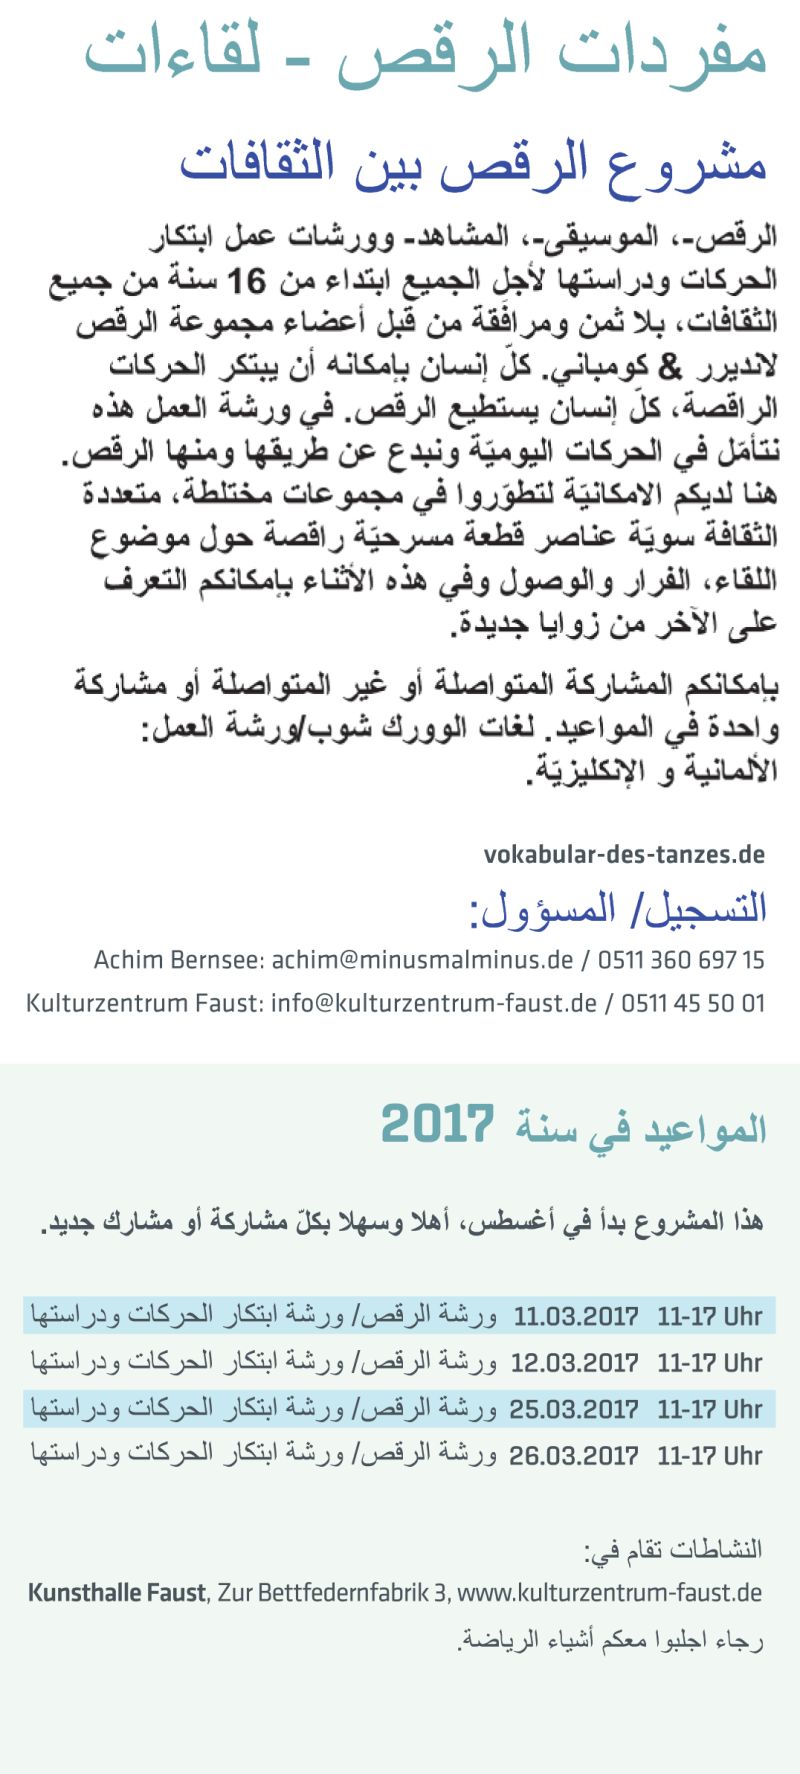 Vokabular des Tanzes - Ankuendigung Arabisch 2017